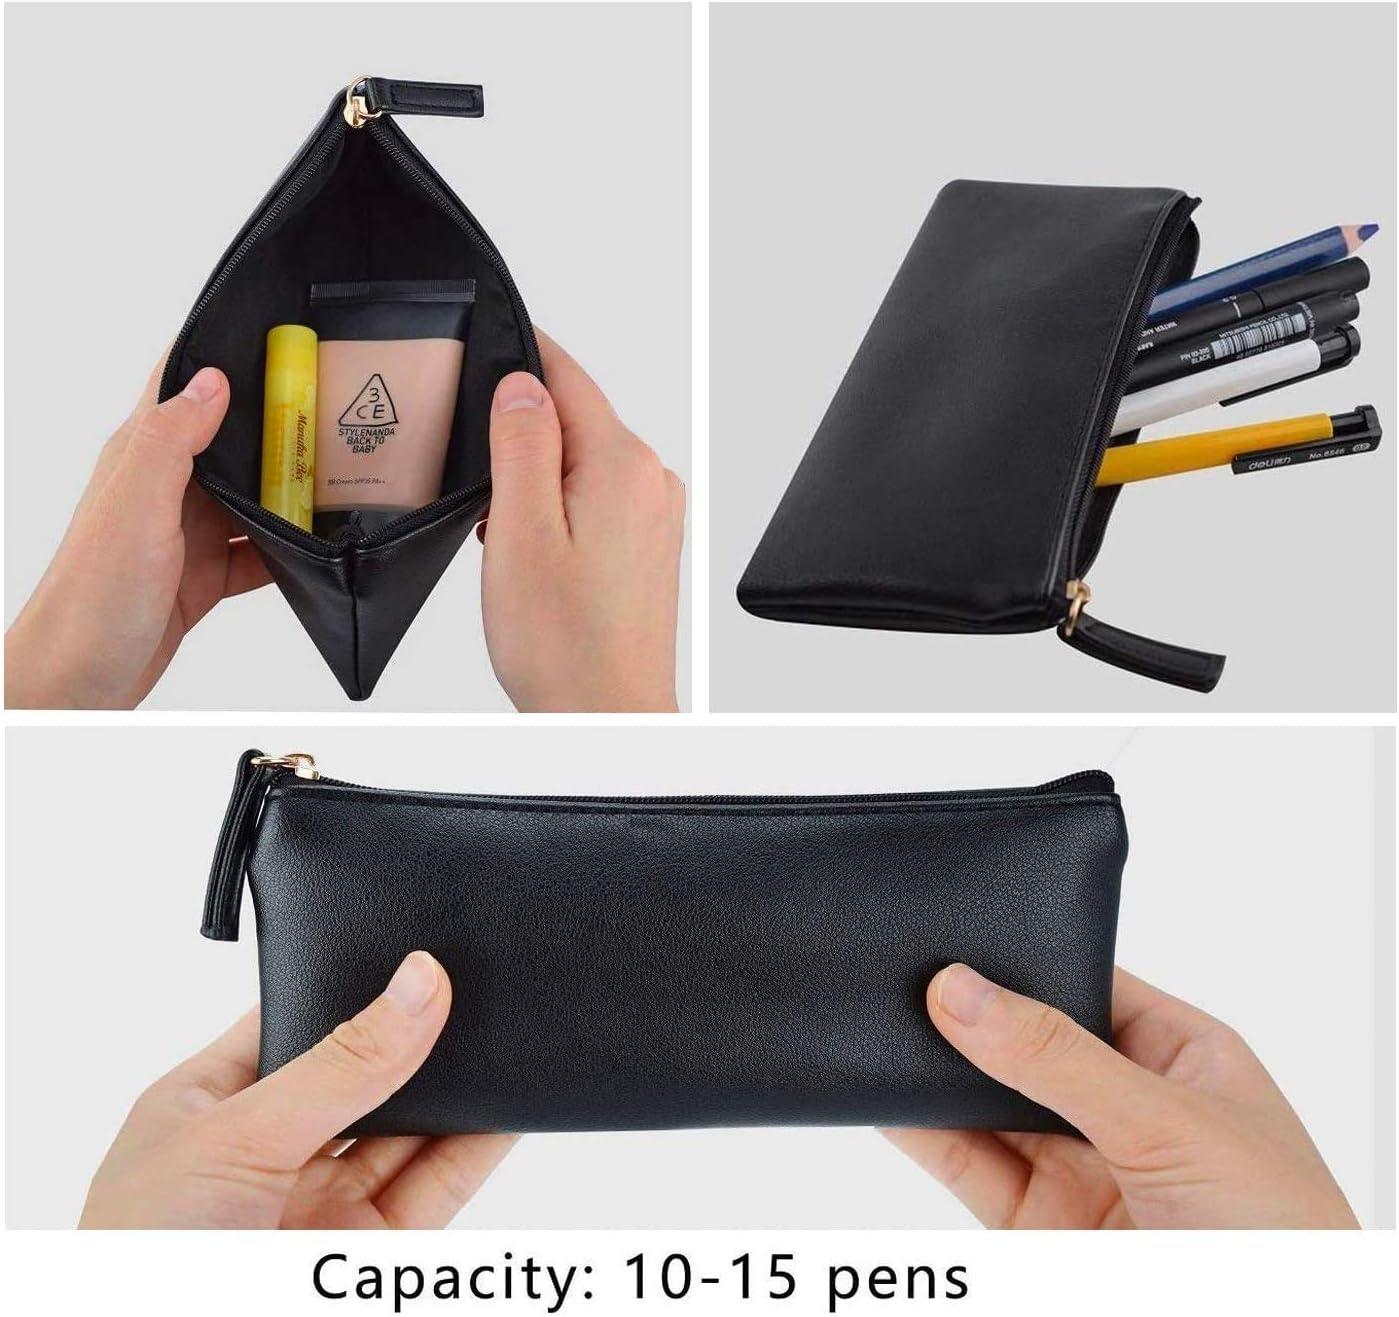 MROCO Pencil Case Pencil Pouch Black Pencil Bag PU Leather Pen Case Small  Zipper Pouch for Pencils, Pens, Markers, Makeups, Change, Coins